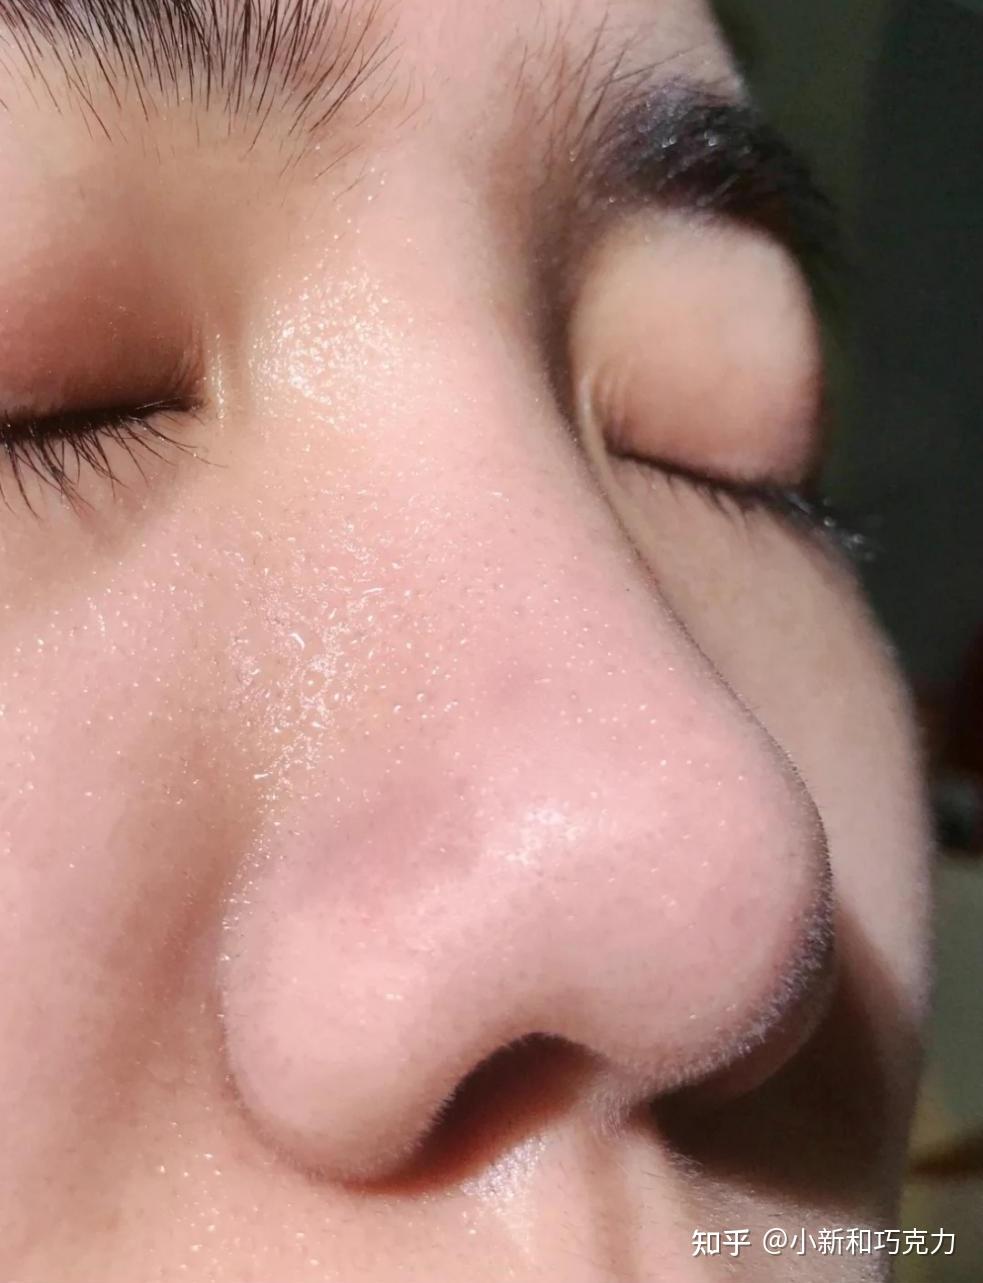 我有一个很严重的草莓鼻,有时候看到满鼻子的黑头,觉得自己的鼻子很丑